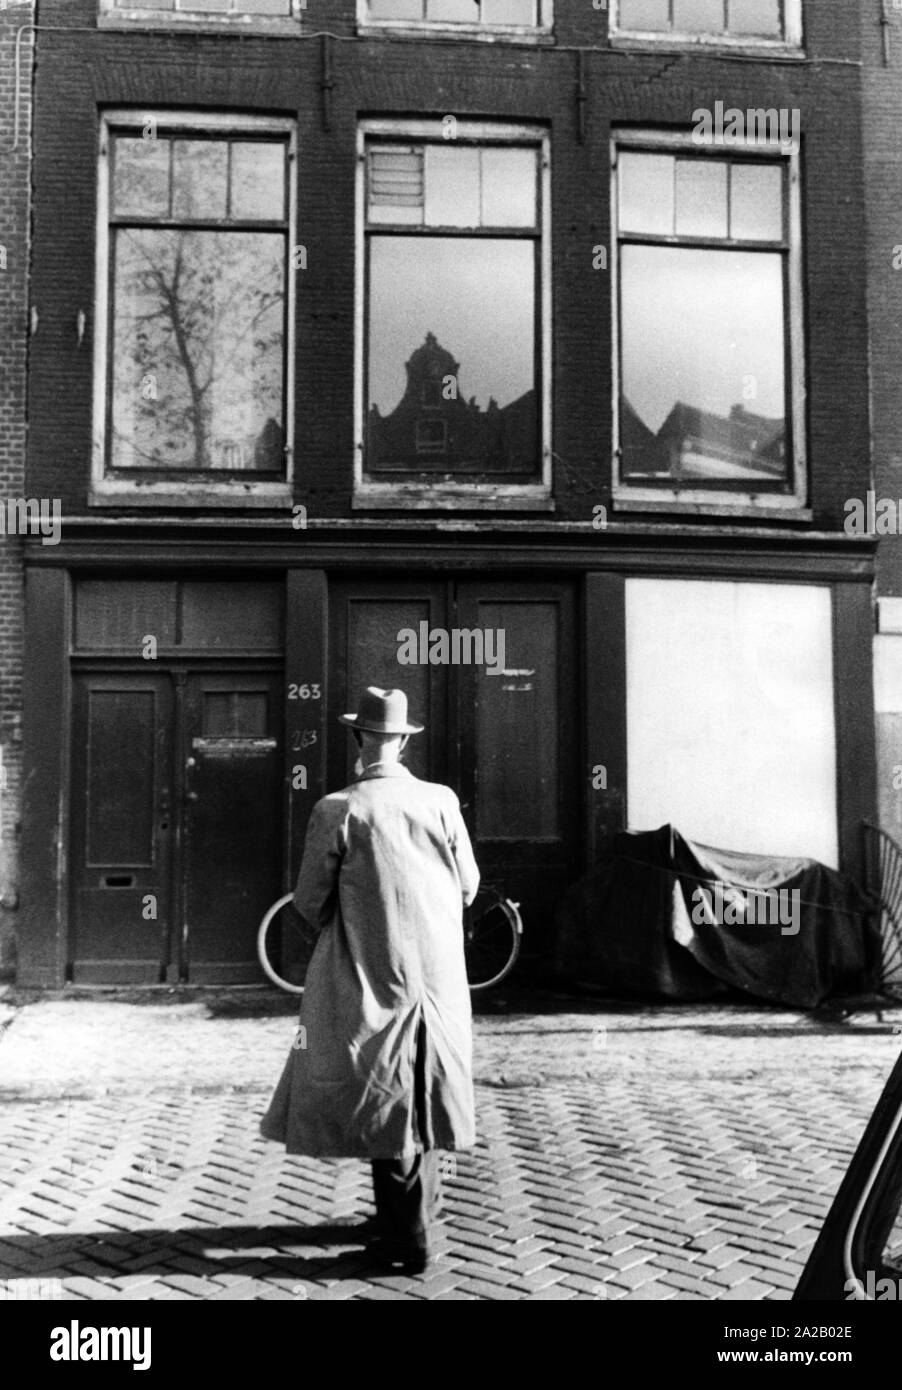 Eingang zum Anne Frank Haus in der Prinsengracht 263. Anne Frank und ihrer Familie sowie der Familie van Pels und Fritz Pfeffer, versteckt von der Gestapo in einem Hinterhof. Heute ist das Haus ein Museum. Stockfoto